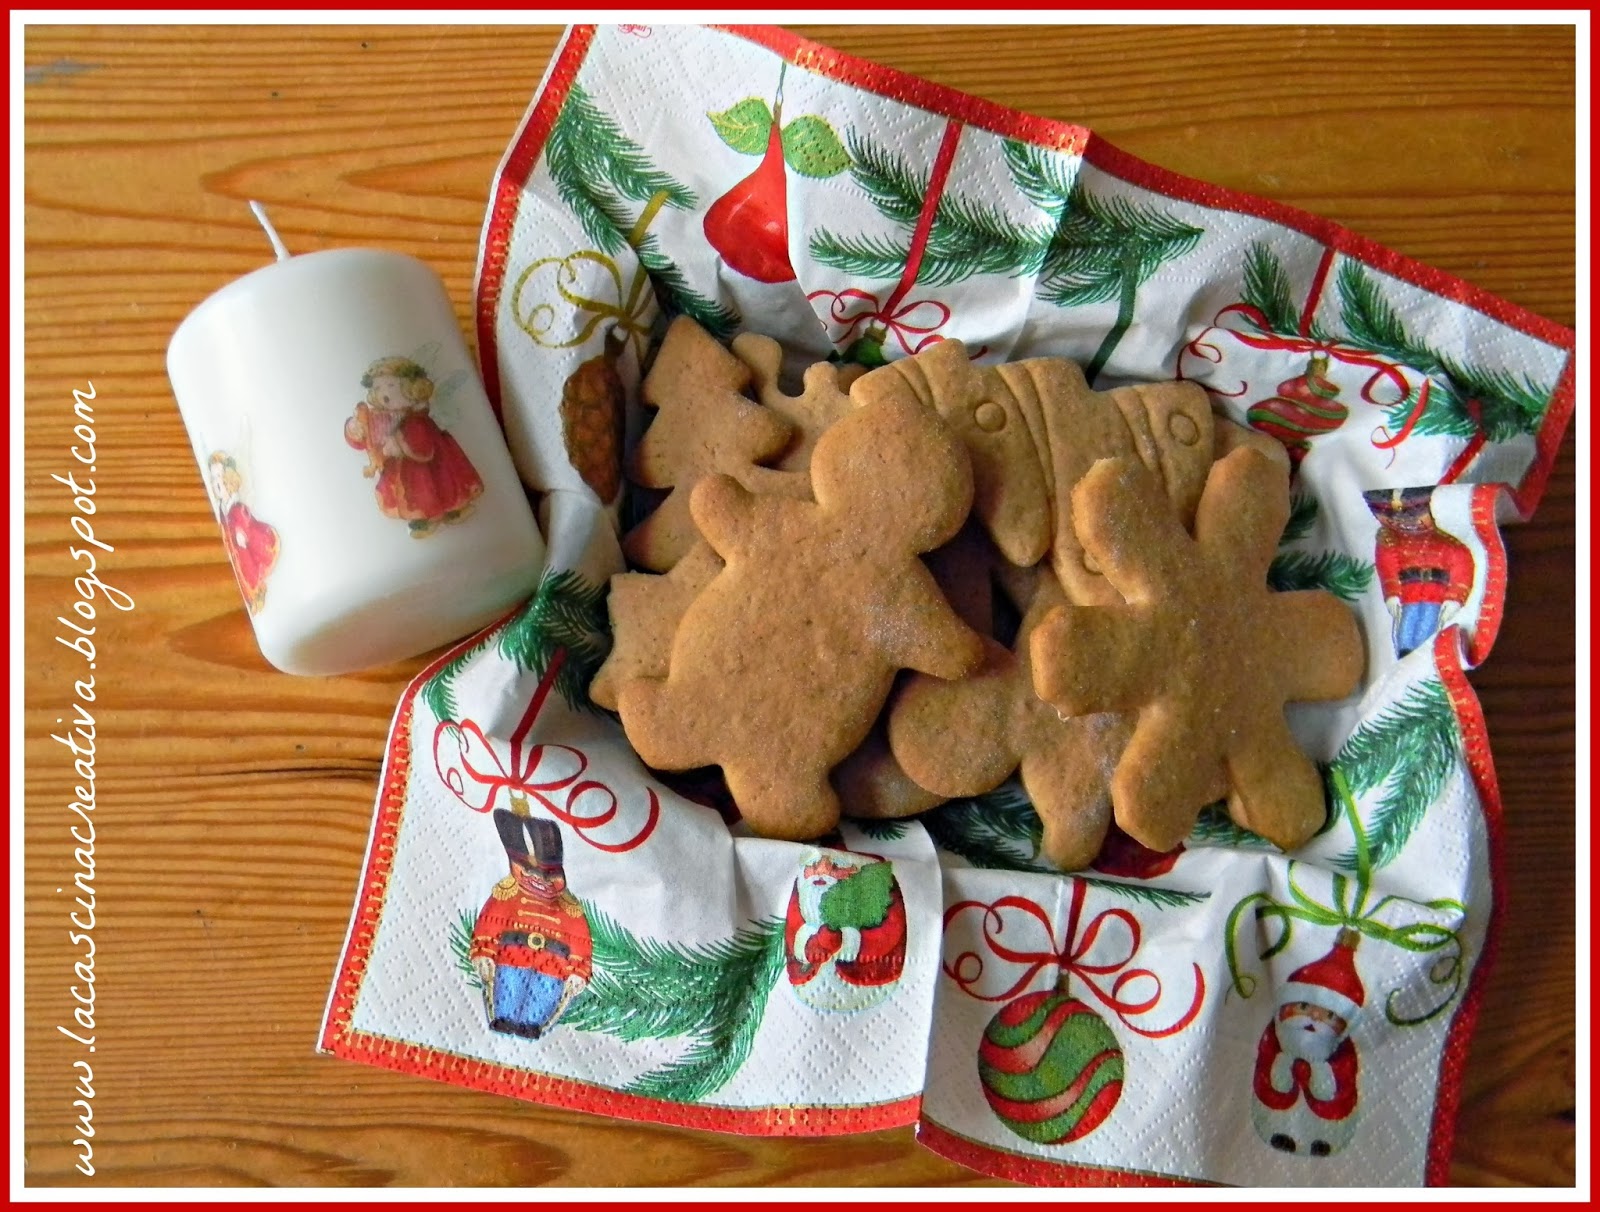 Sacchetti Per Biscotti Di Natale.La Cascina Creativa Vassoi Di Cartone E Sacchetti In Carta Oleata Per I Biscotti Di Natale